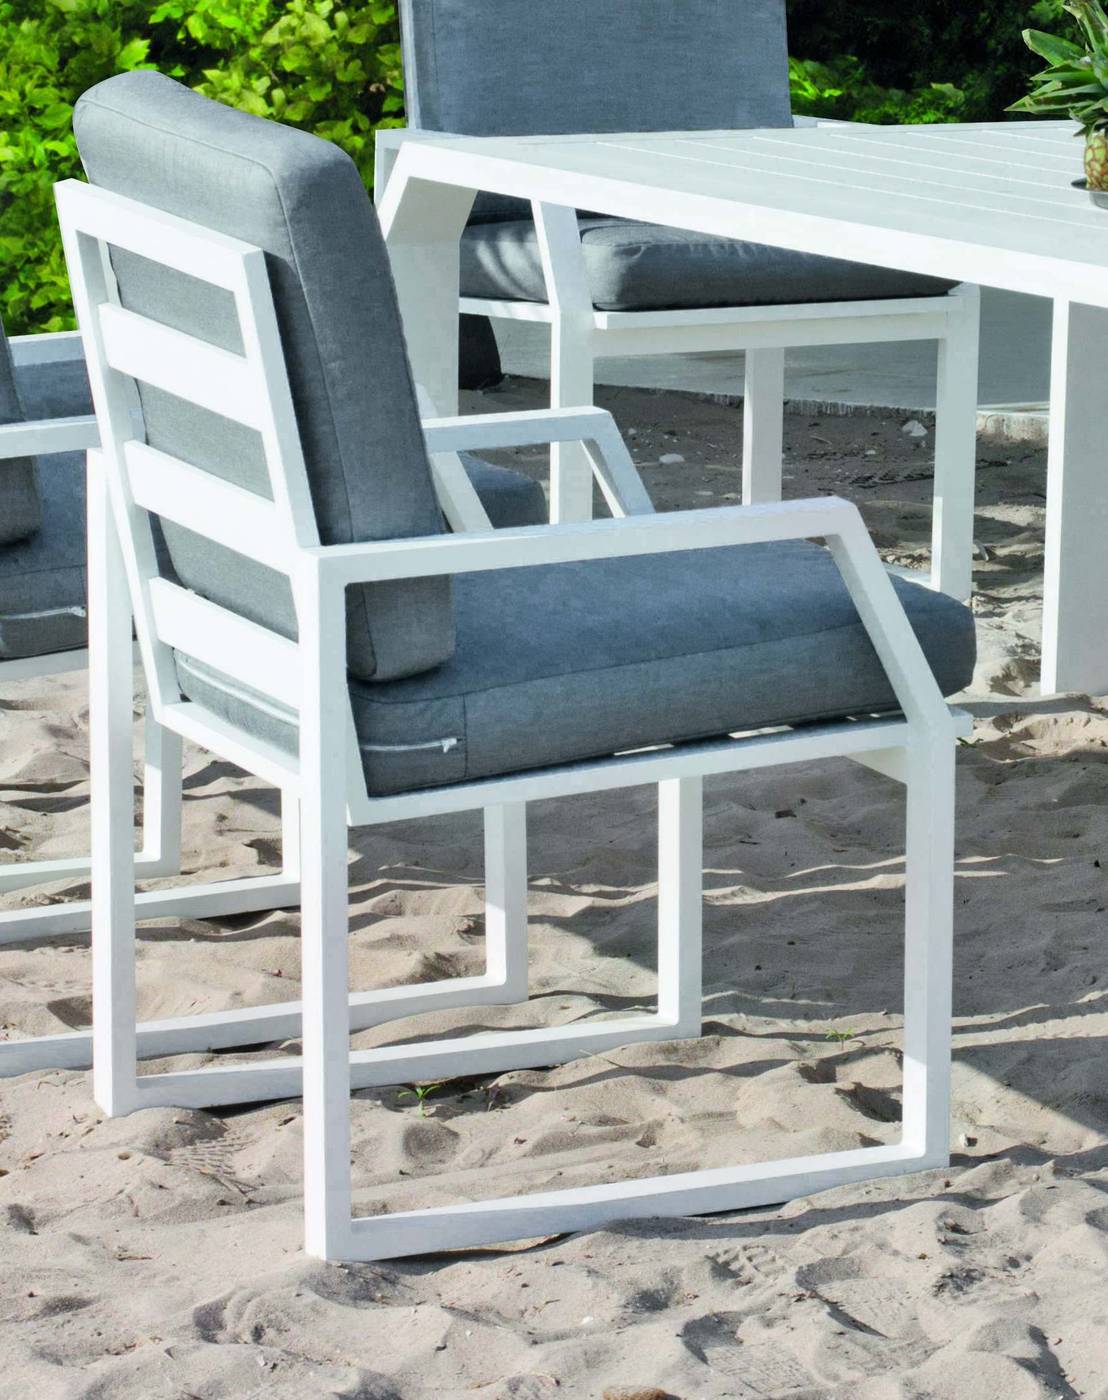 Sillón Aluminio Zafiro-31 - Sillón comedor para jardín o terraza. Estructura, asiento y respaldo de aluminio de color blanco, antracita, champagne, plata o marrón